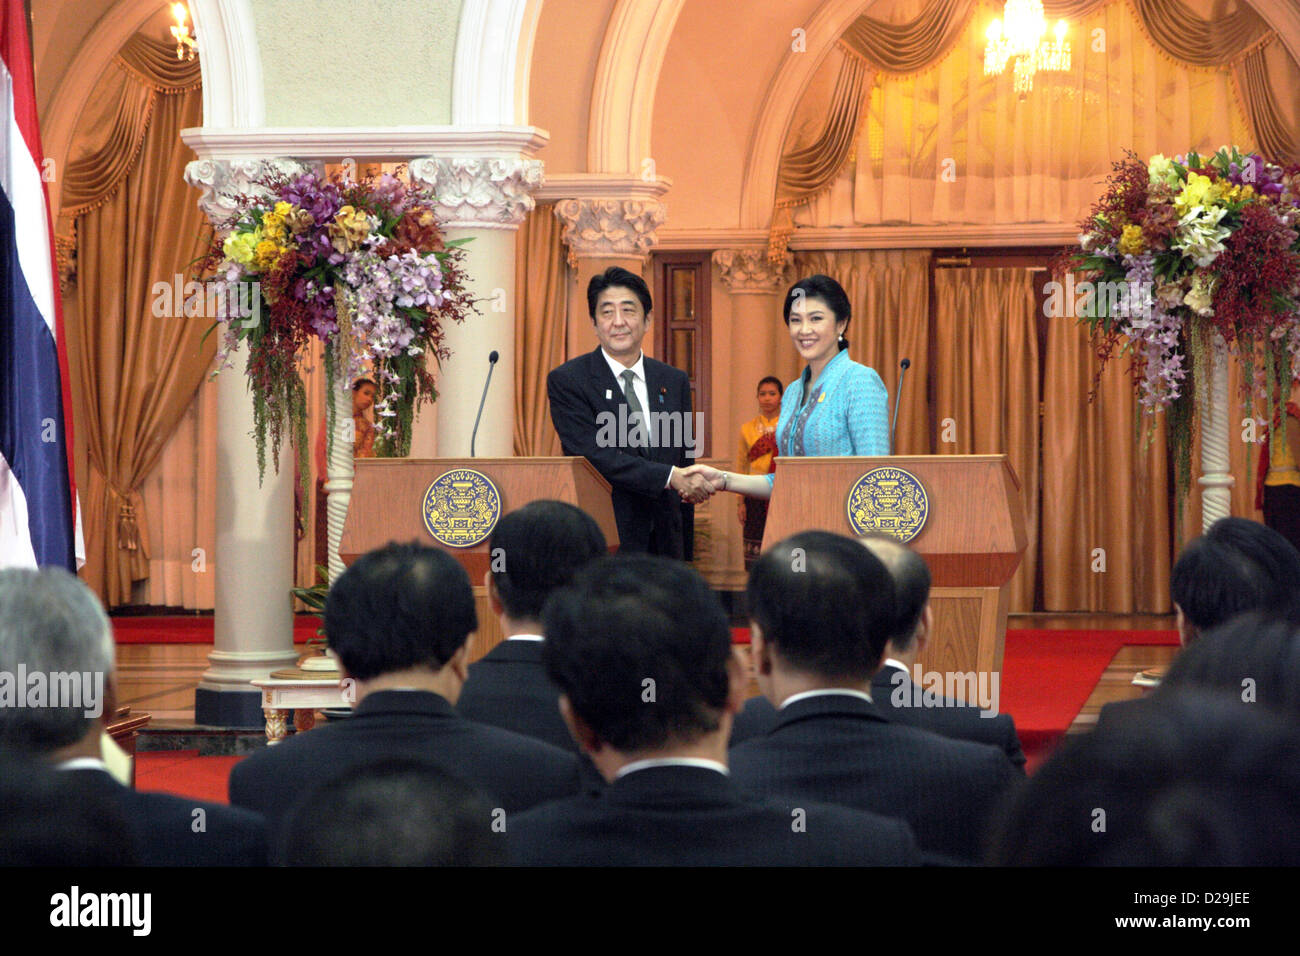 17e Janvier 2013. Bangkok, Thaïlande. Shinzo Abe, premier ministre du Japon, serre la main avec Yingluck Shinawatra, le premier ministre, lors d'une conférence de presse à l'Hôtel du Gouvernement . Abe devient le premier Premier Ministre japonais à visiter la Thaïlande en 11 ans . Le premier ministre japonais est arrivé en Thaïlande le jeudi.Il a visité l'Institut de technologie de Thai-Nichi et obtenu une audience avec Sa Majesté le Roi, à Son Altesse Royale la Princesse Galyani Vadhana Auditorium à l'hôpital Siriraj avant de s'entretenir avec Mme Yingluck à l'Hôtel du Gouvernement. Banque D'Images